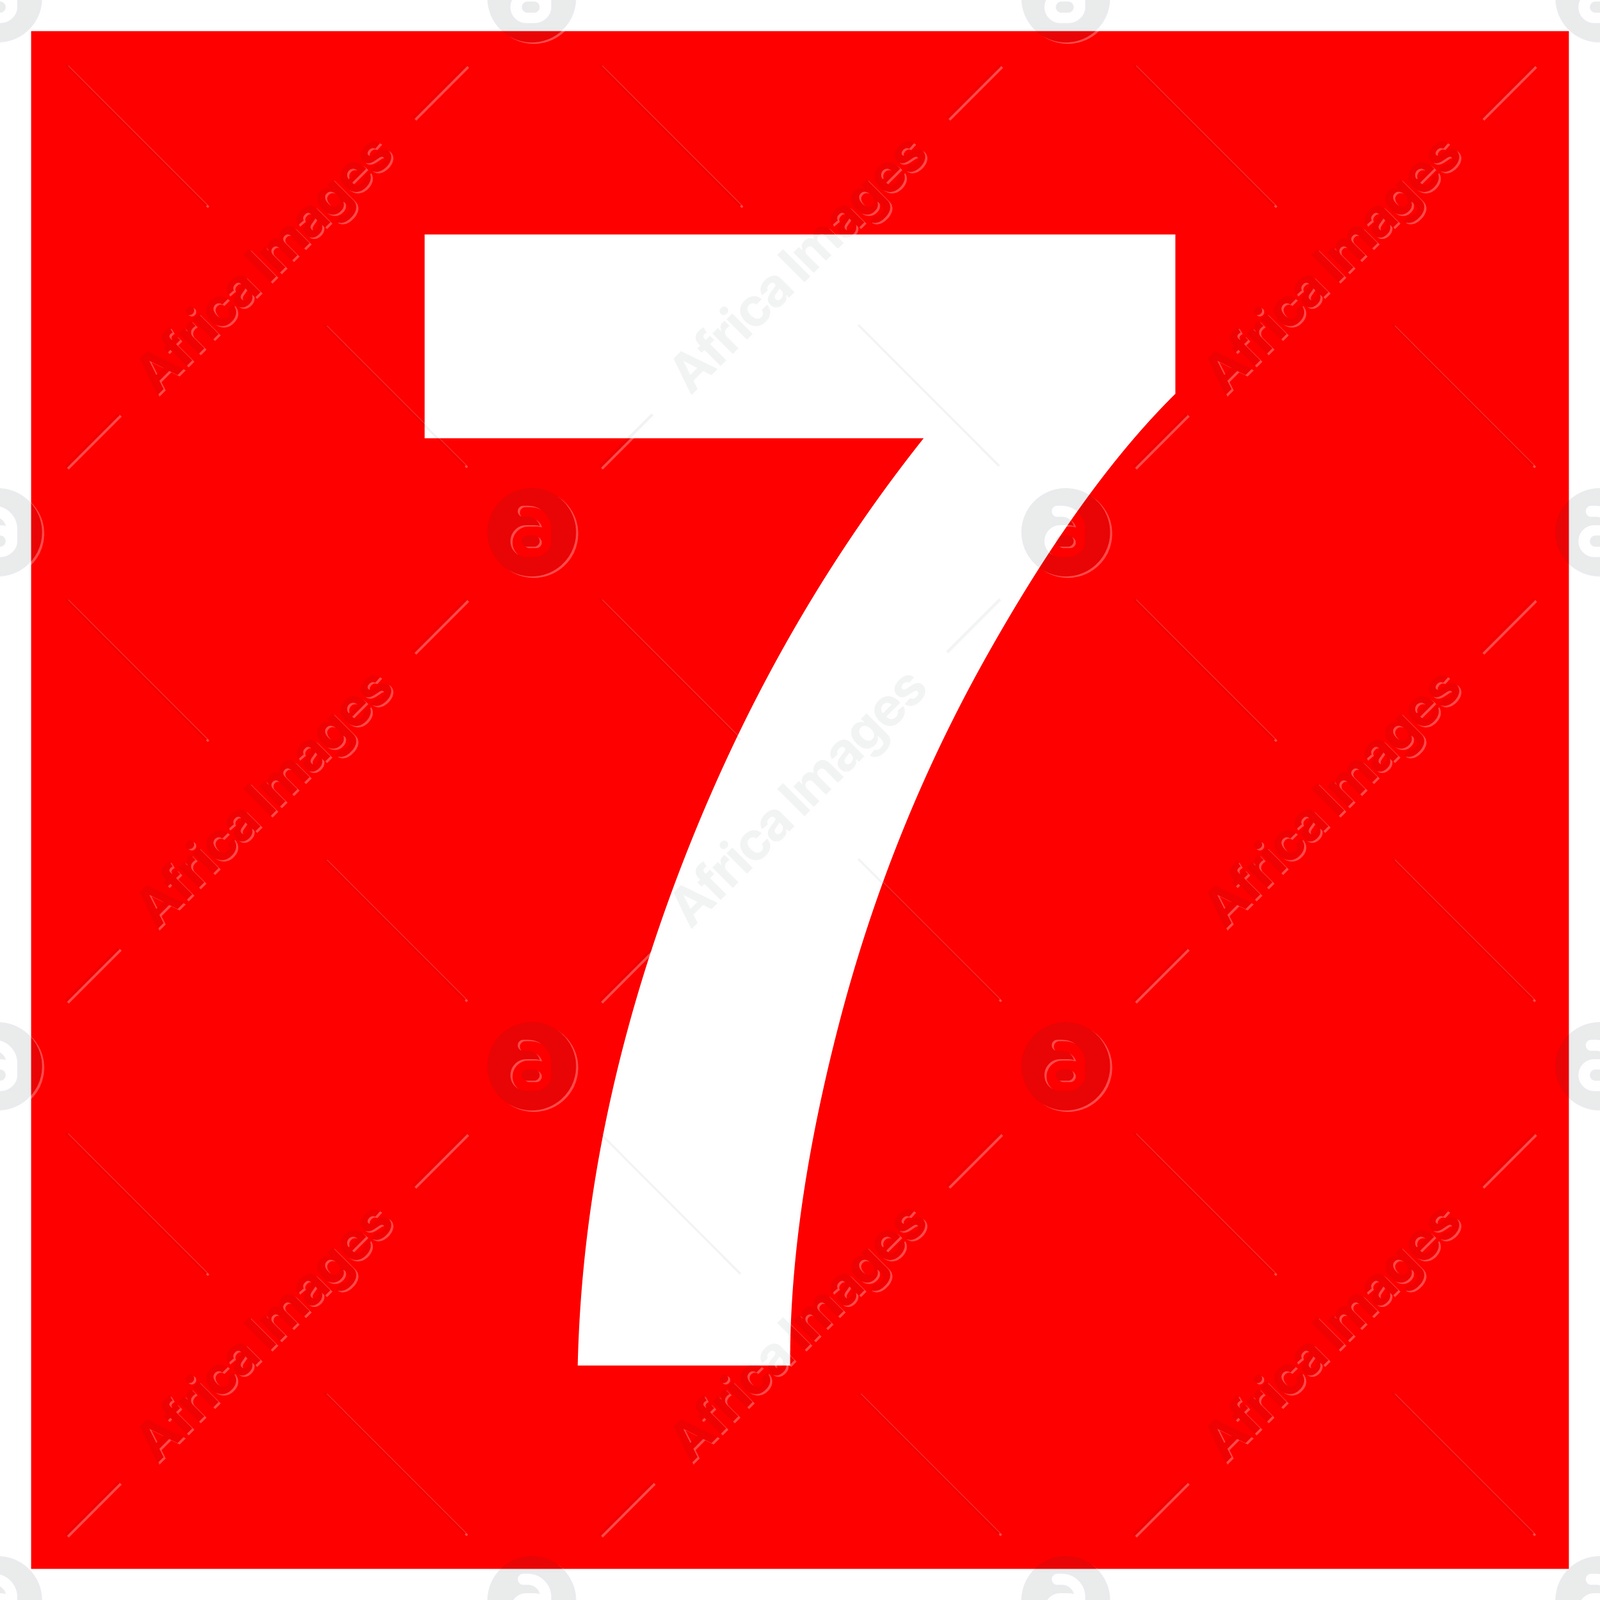 Image of International Maritime Organization (IMO) sign, illustration. Number "7" 